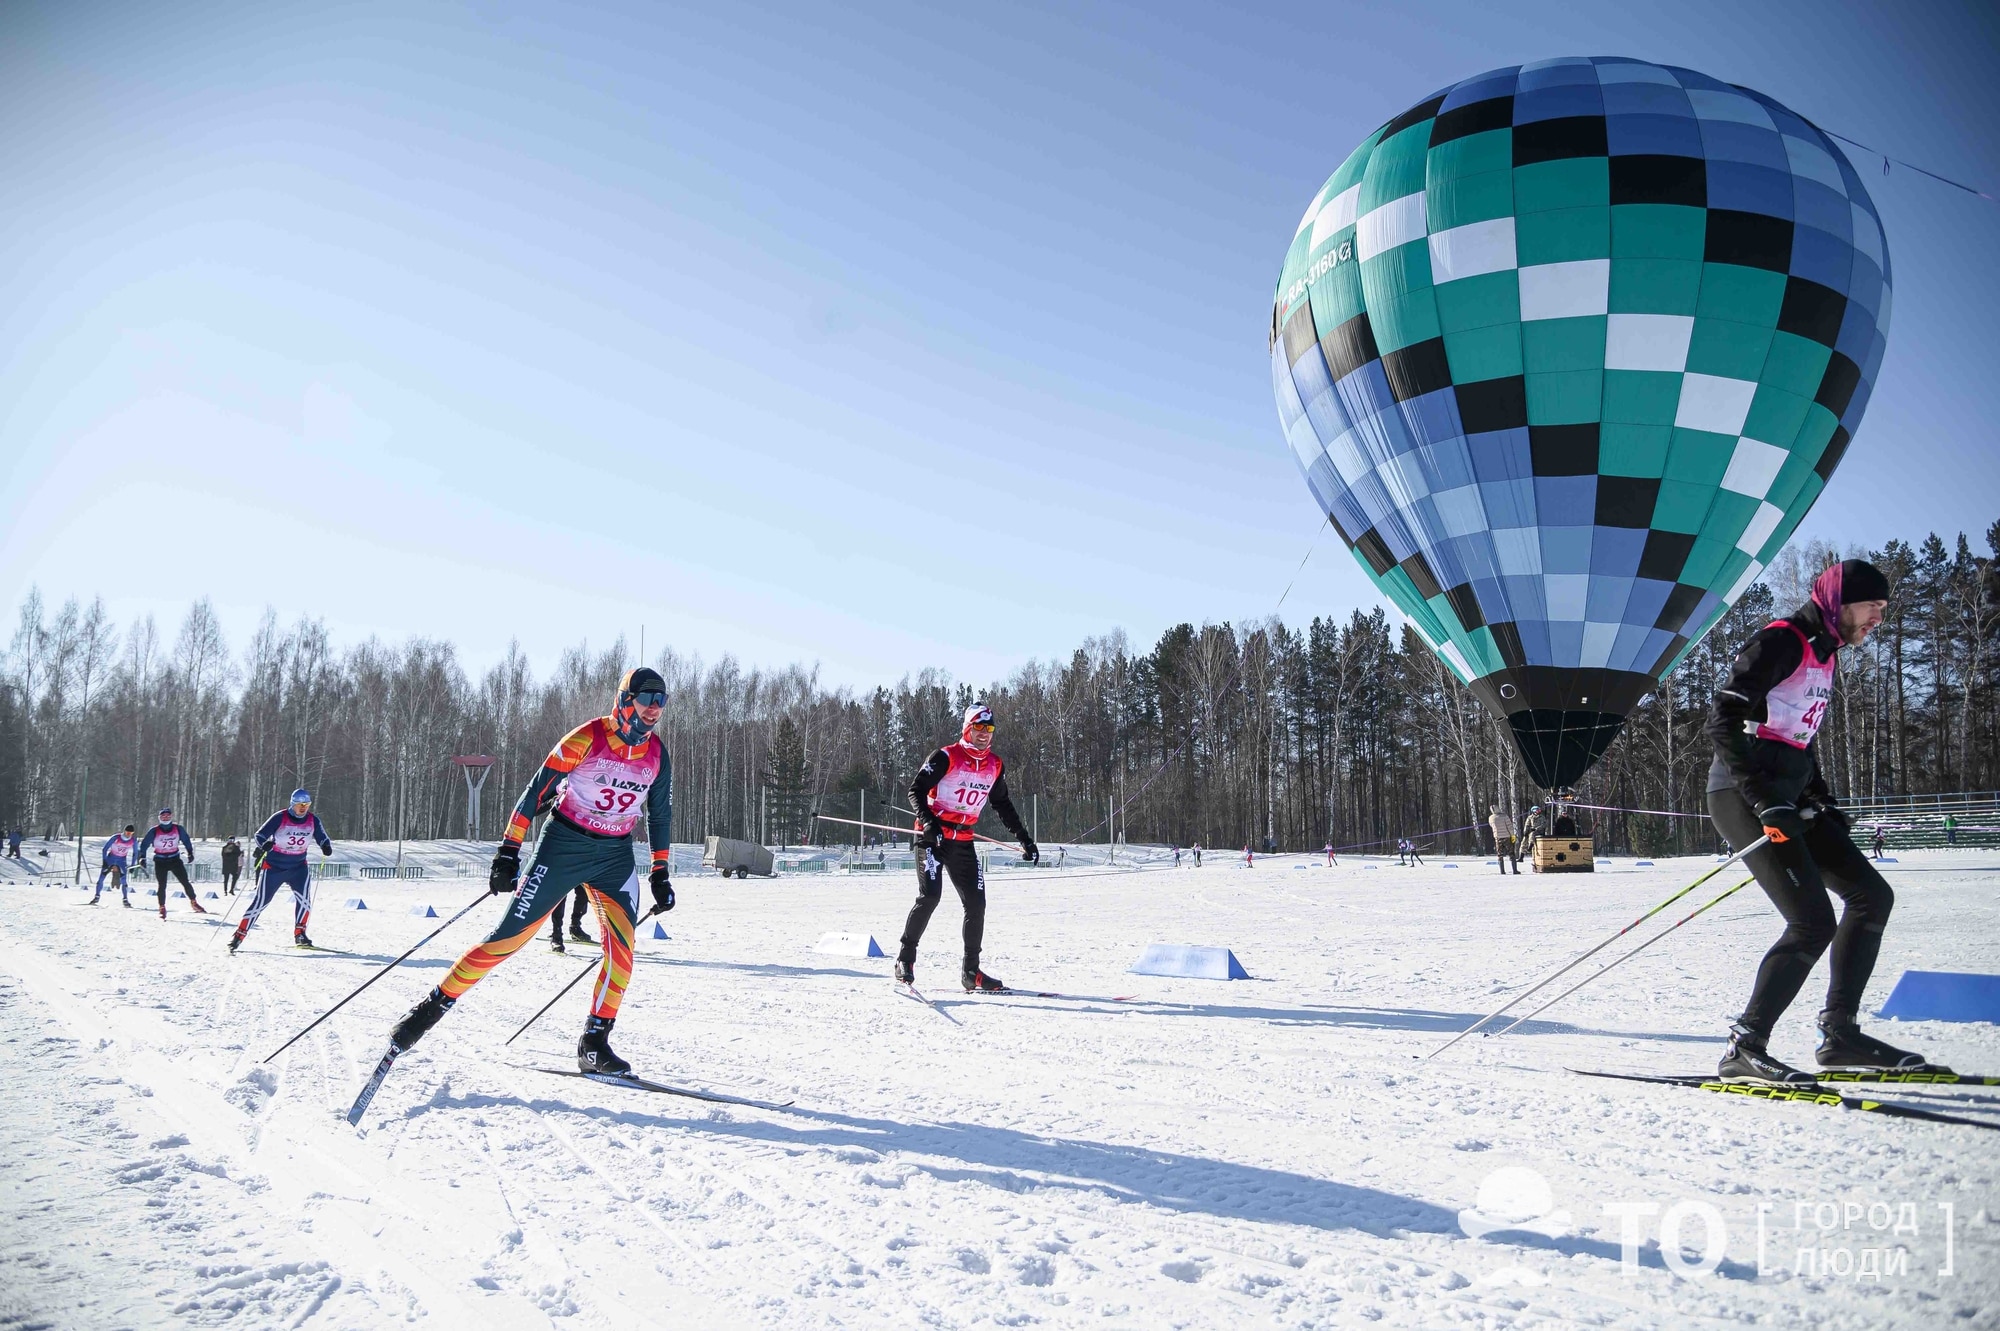 Спорт, Спорт в Томске, Томские новости, ТПУ, марафон лыжные гонки турнир соревнования состязания В Томске проходит первый лыжный марафон ЛАТАТ